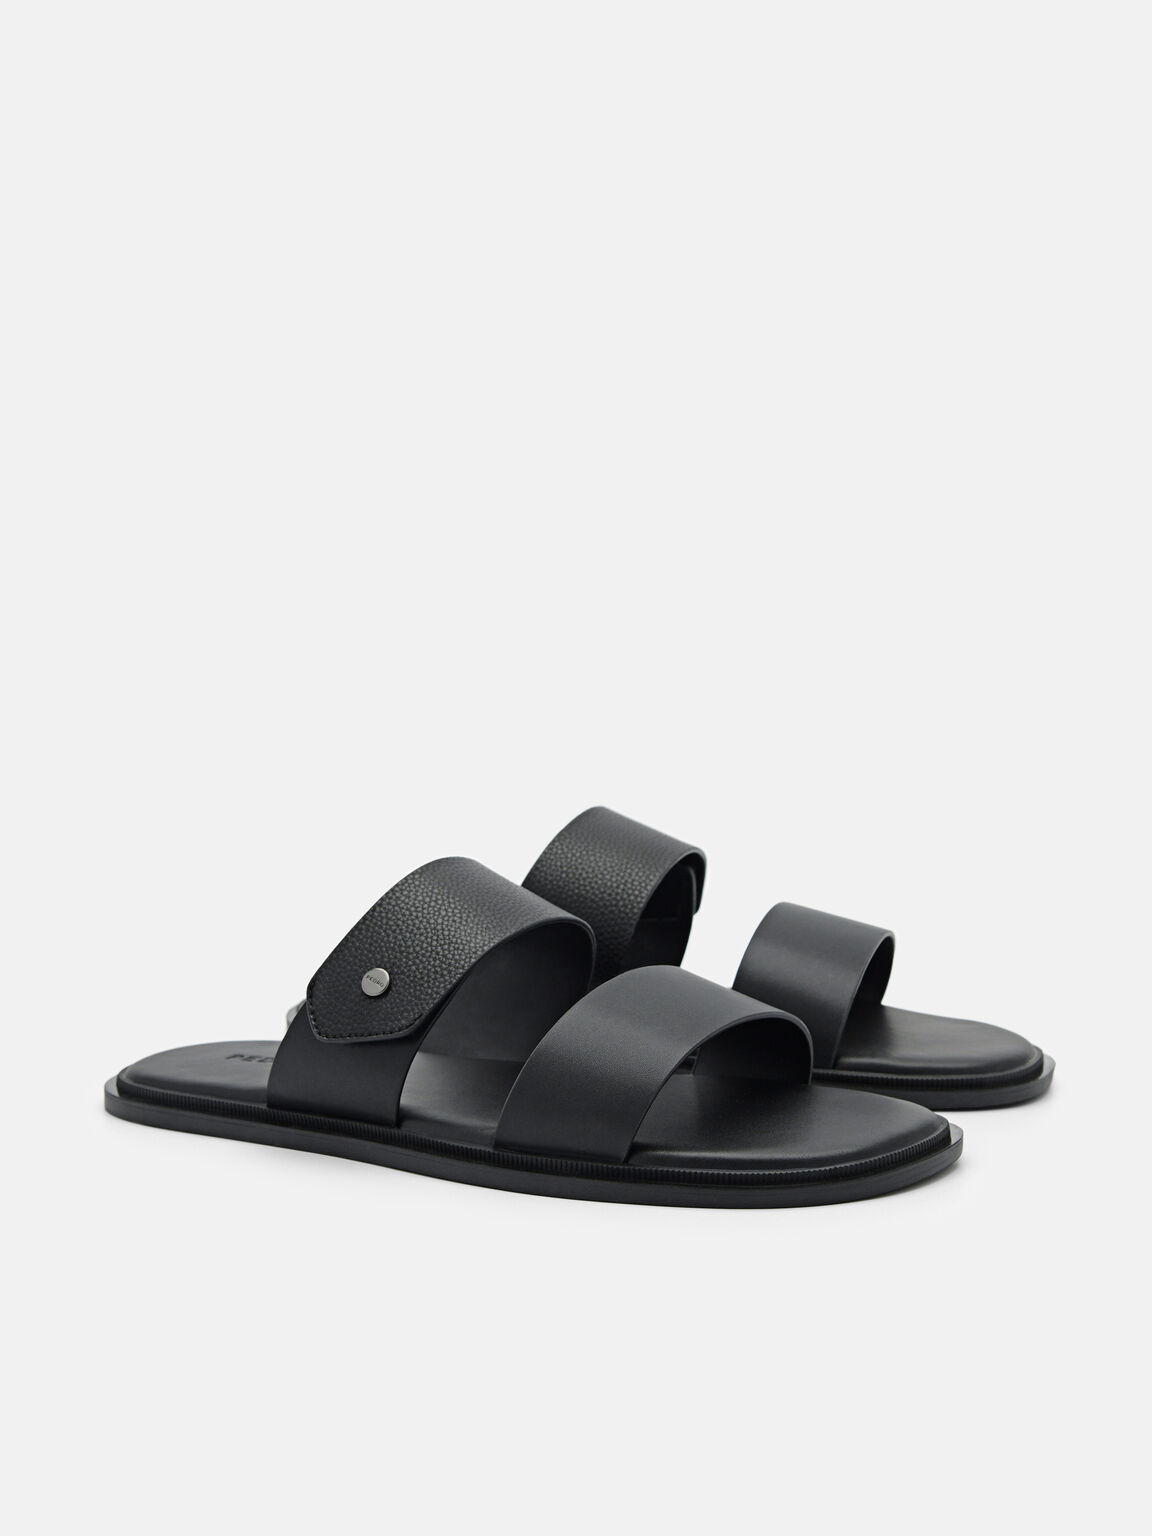 Oliver Slide Sandals, Black, hi-res